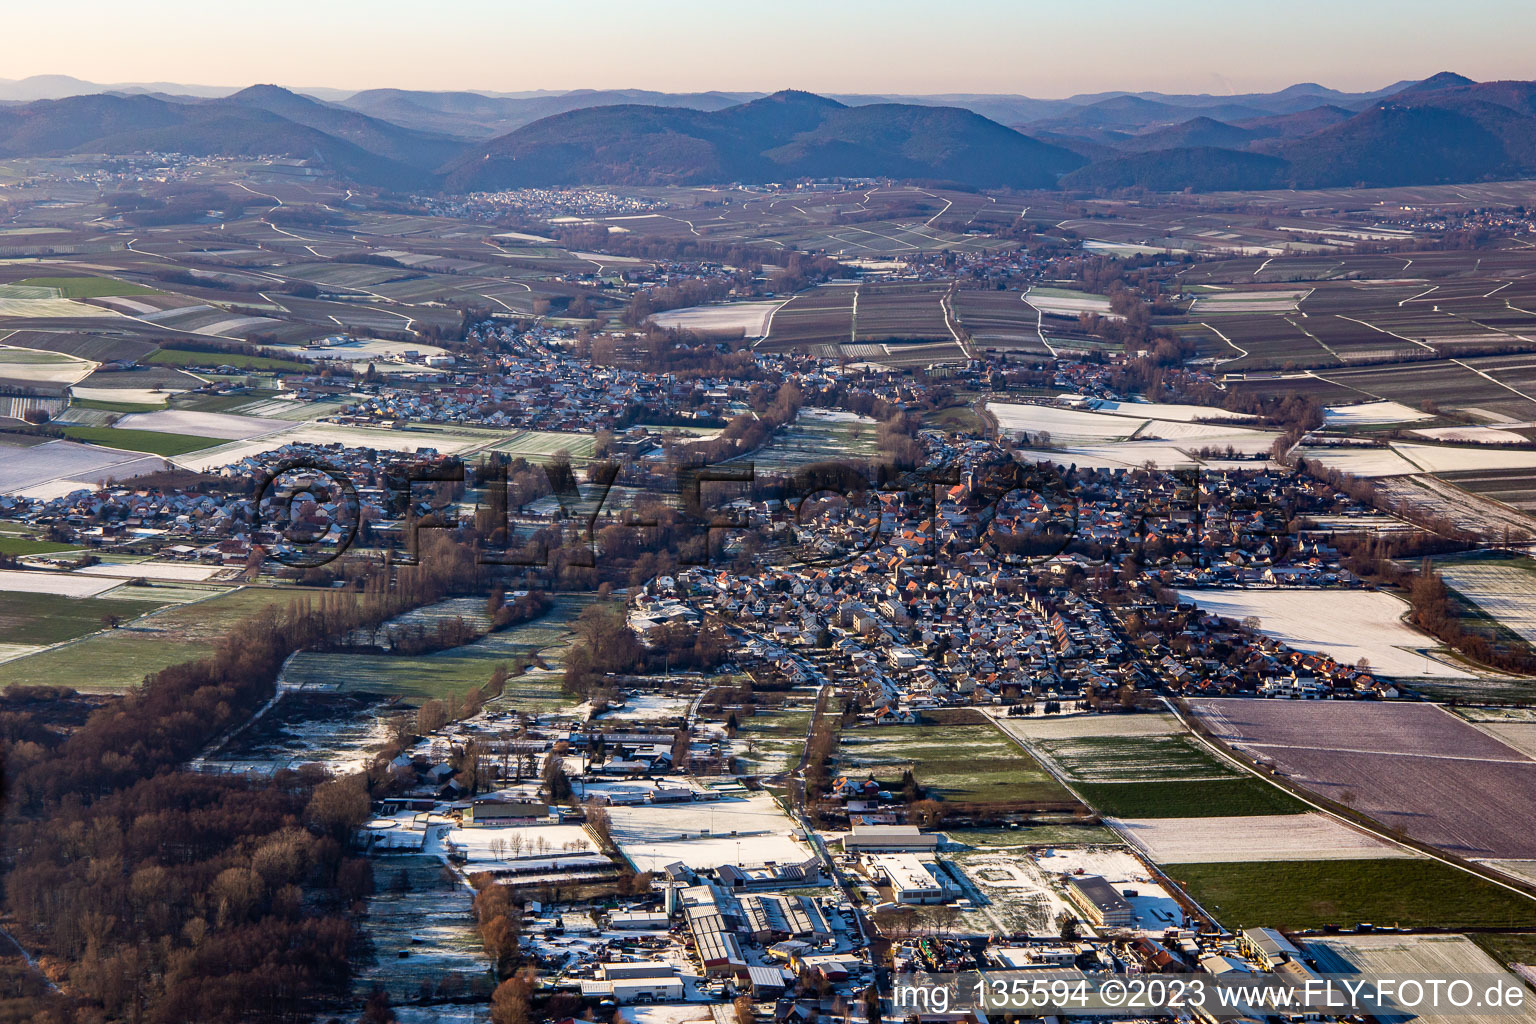 Vue aérienne de De l'est en hiver quand il y a de la neige à le quartier Billigheim in Billigheim-Ingenheim dans le département Rhénanie-Palatinat, Allemagne